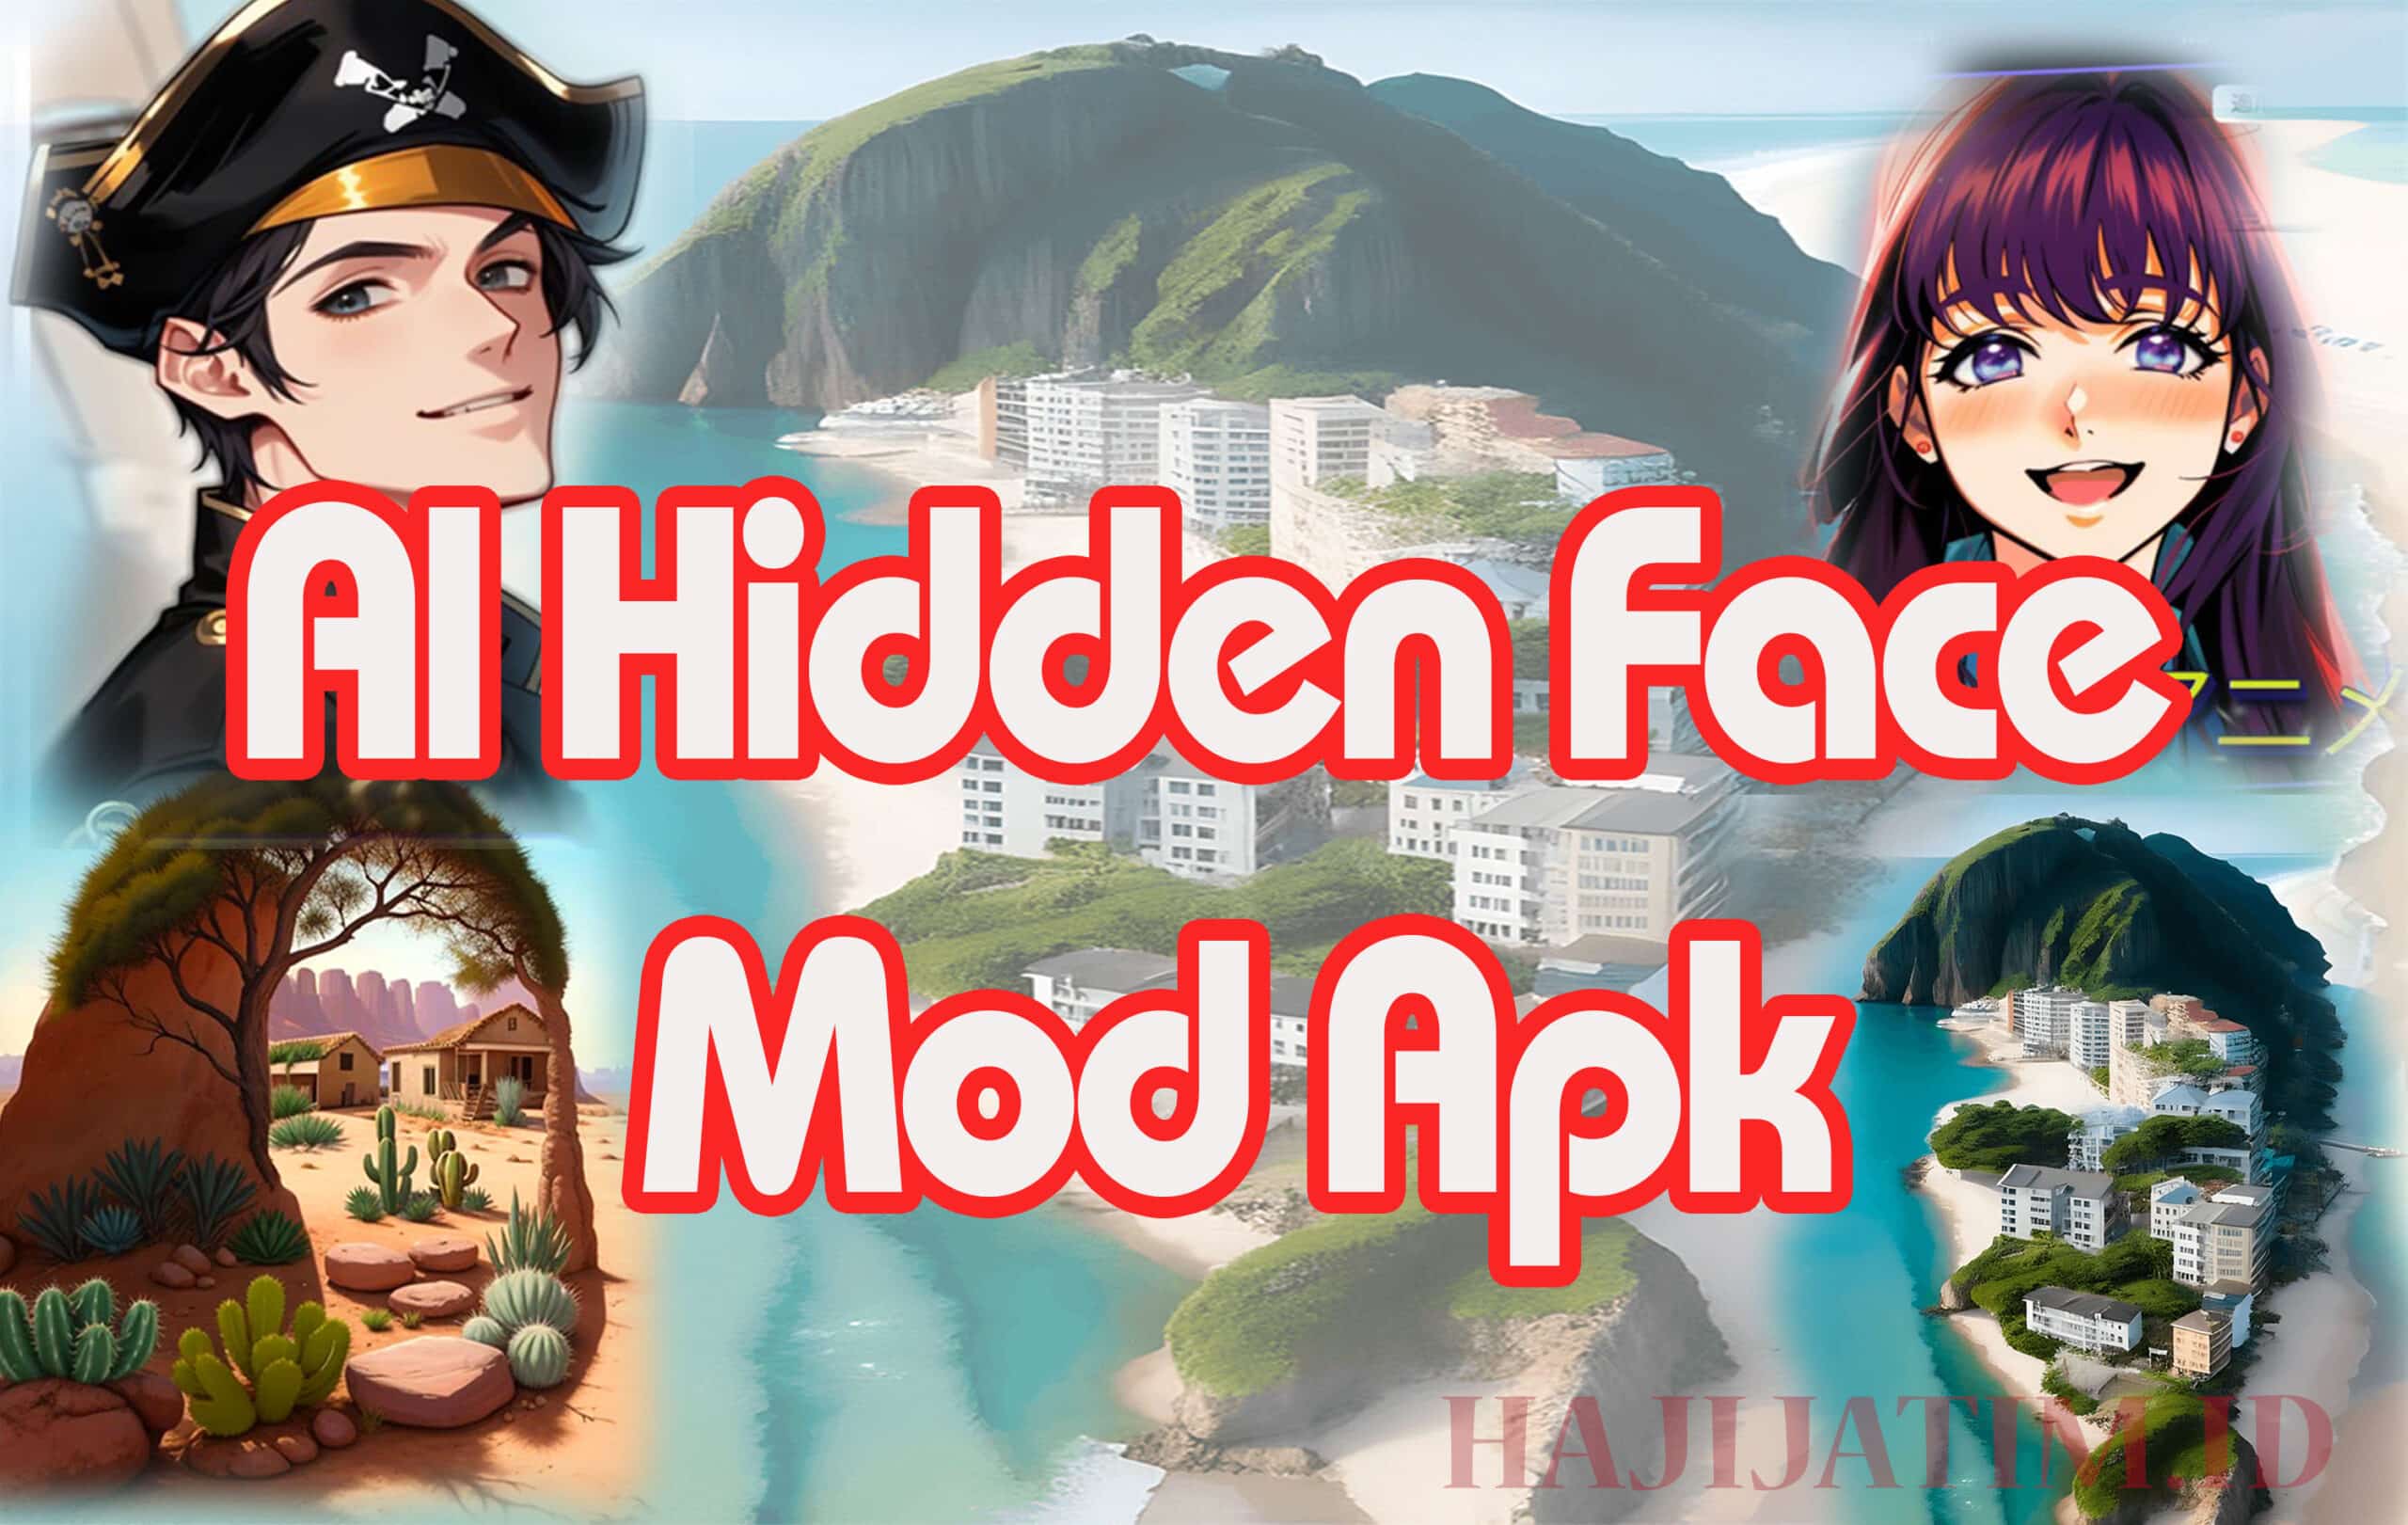 Al Hidden Face Mod Apk